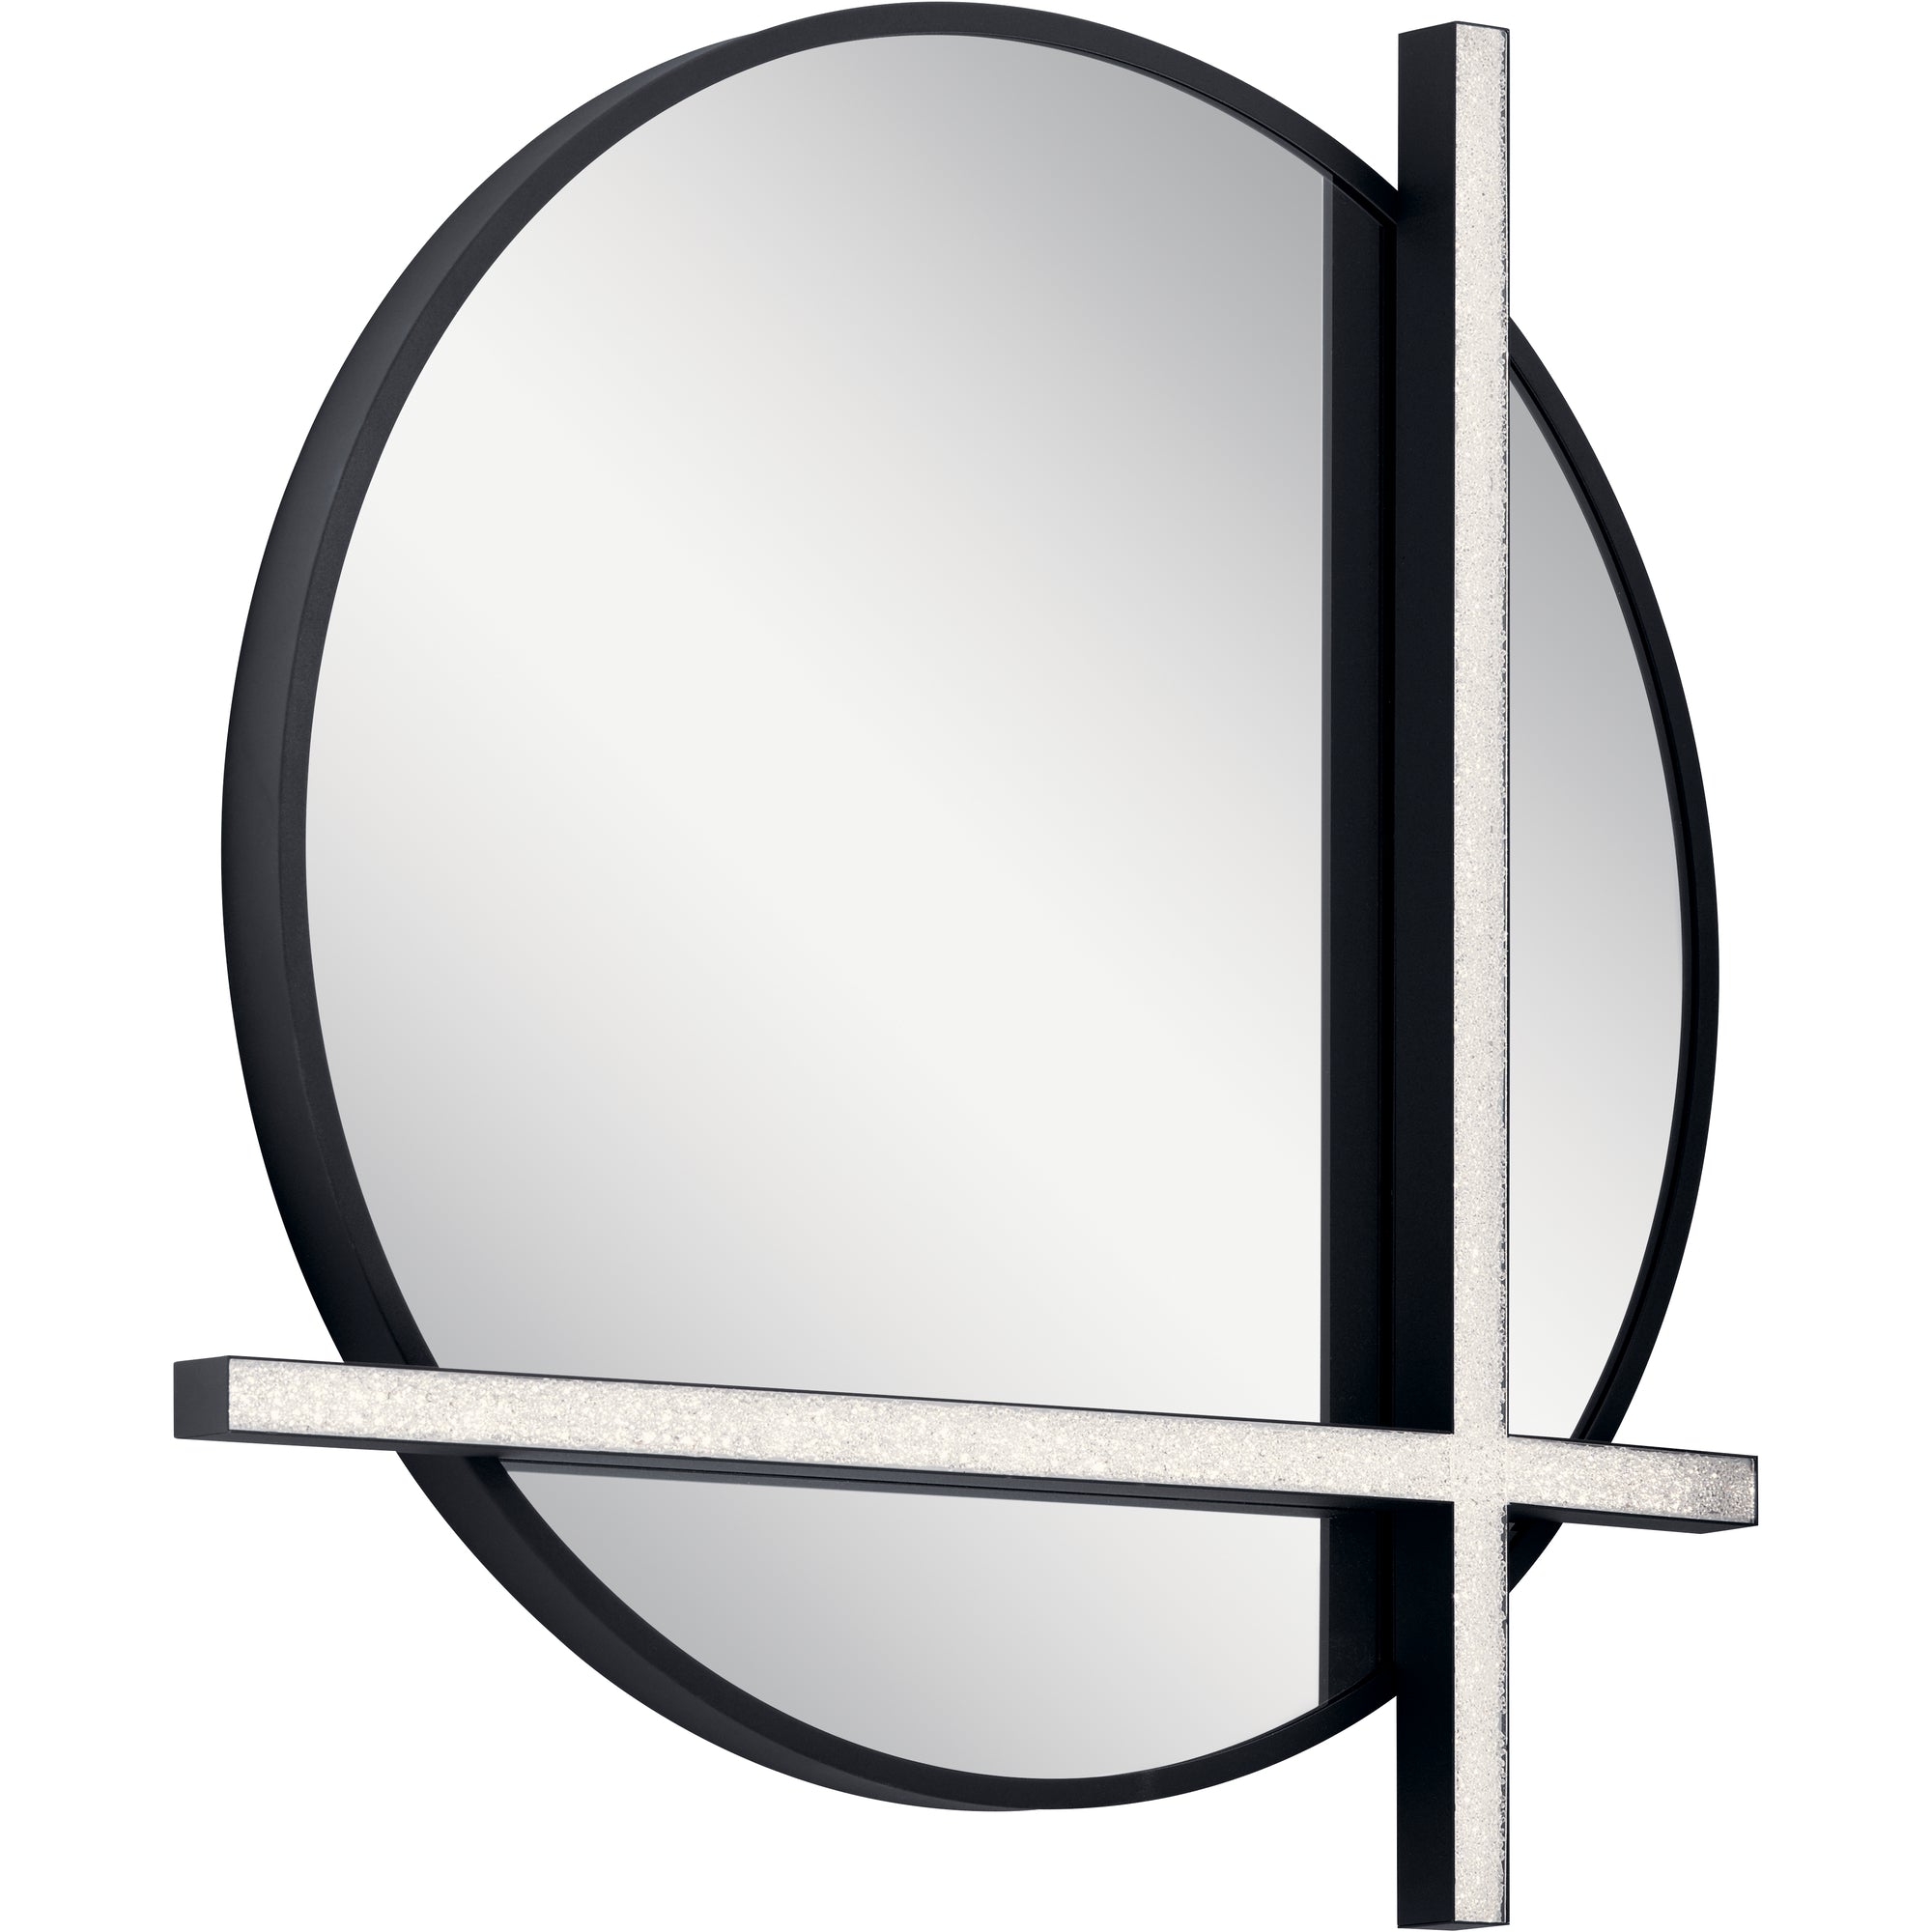 KEMENA Lighting mirror Black - 84163 | ELAN